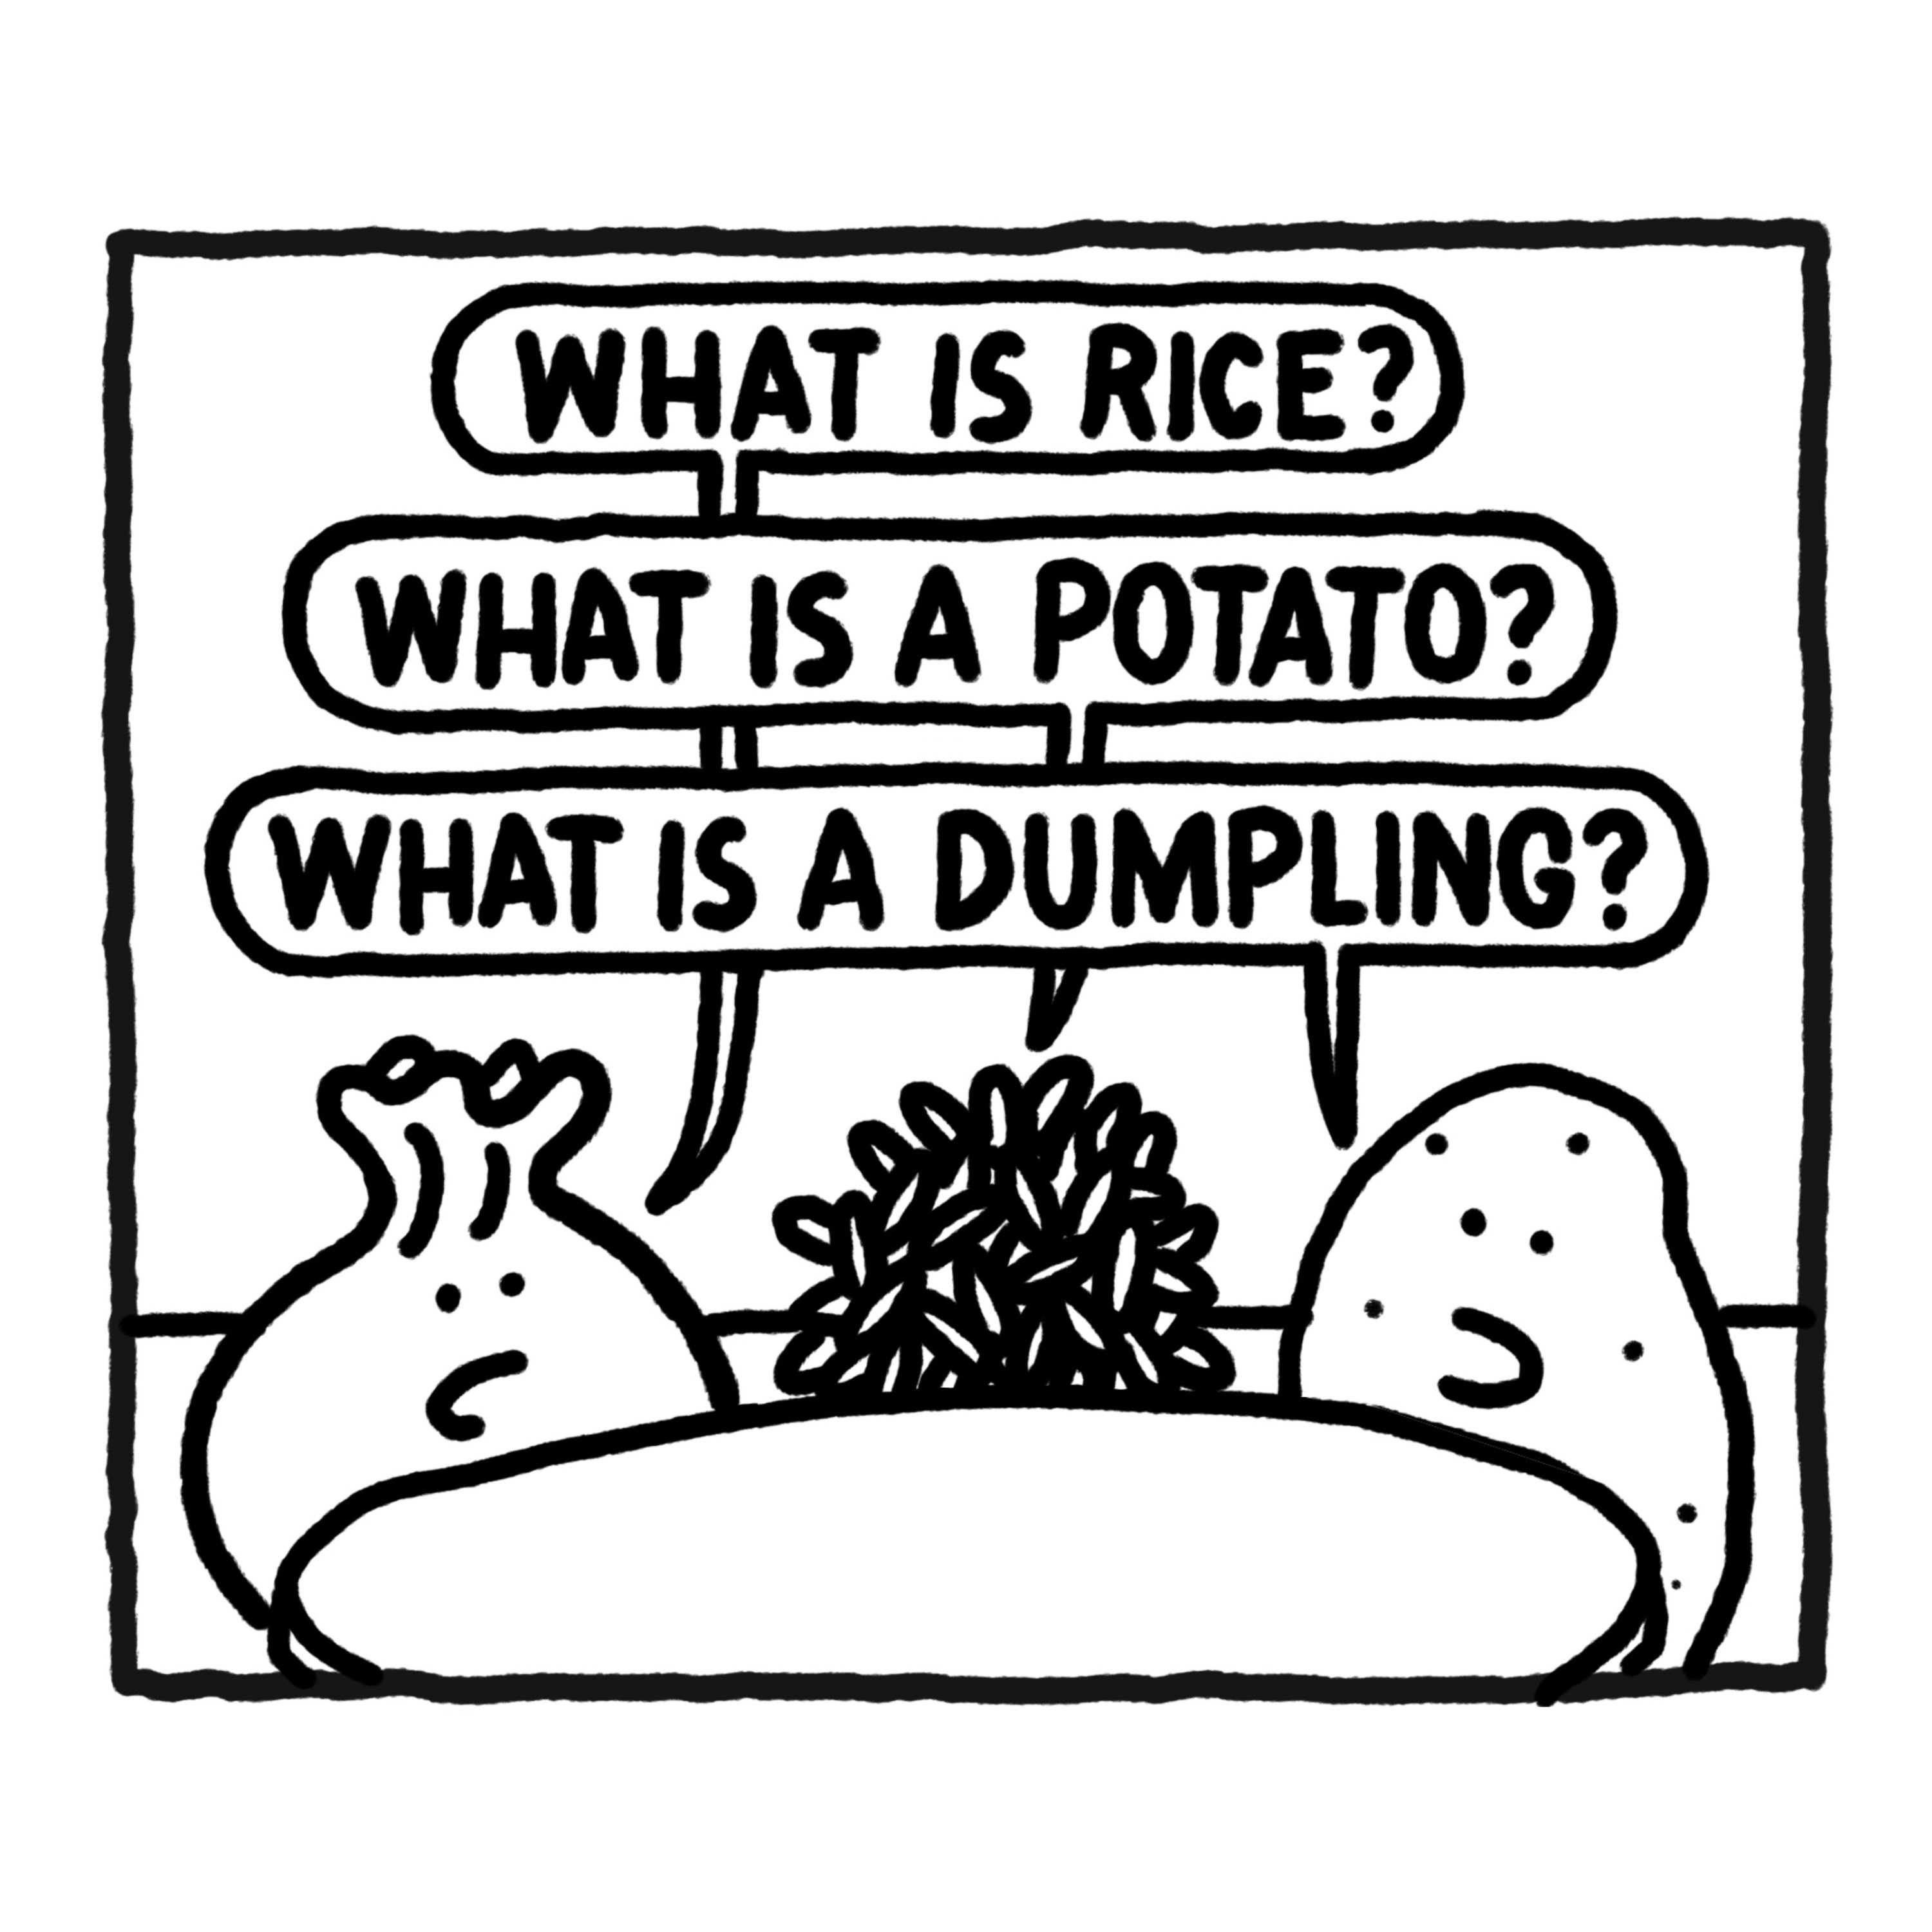 Illustration zum Event Spacedumpling, auf dem Teigtaschen, Reis und Kartoffeln zu sehen sind, die miteinander sprechen.